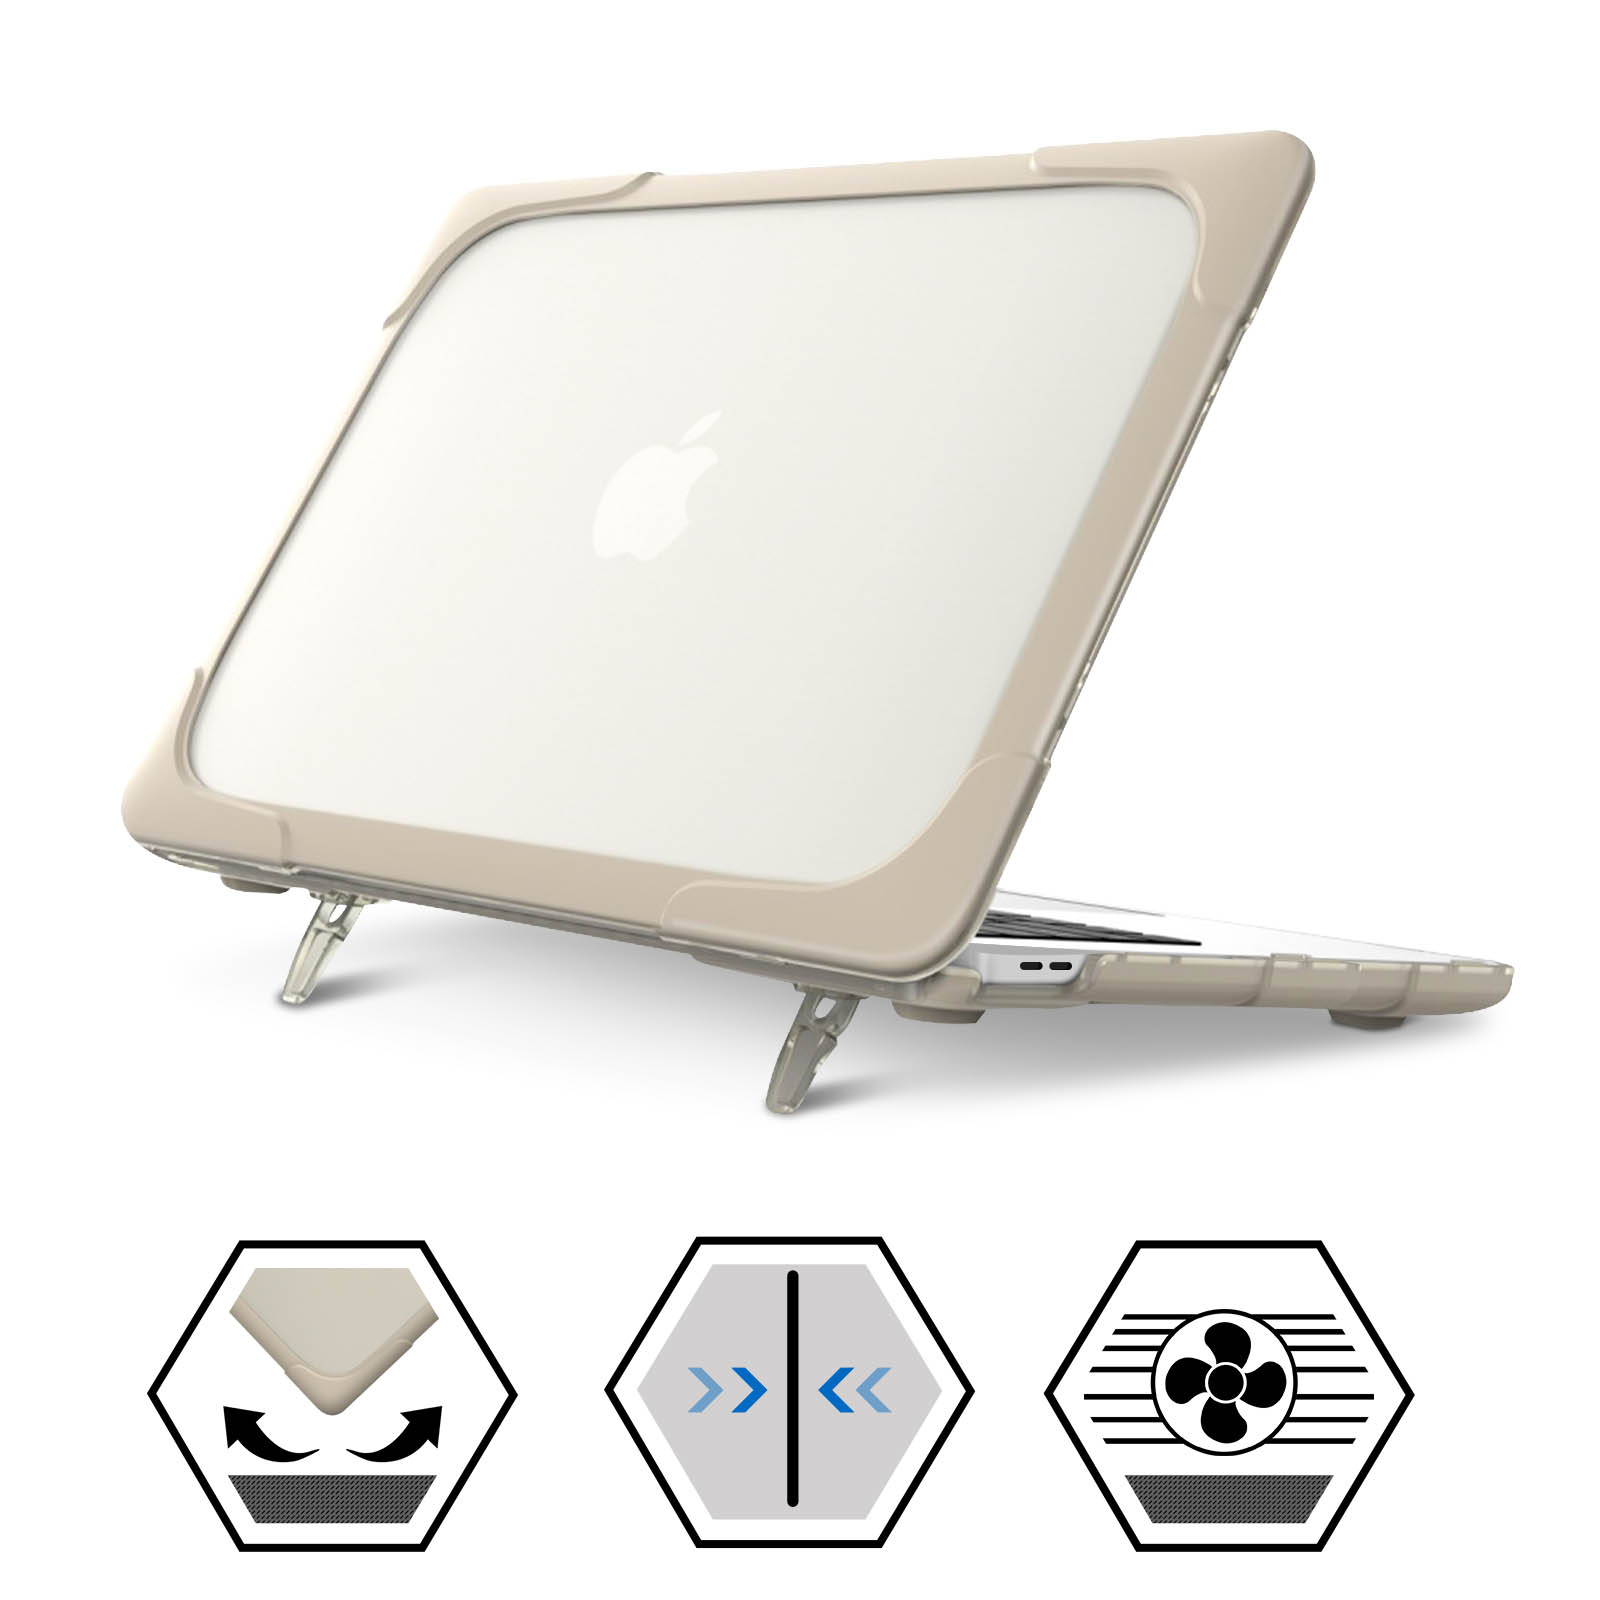 Accessoires Apple MacBook - Protections, chargeurs et plus sur Gsm55